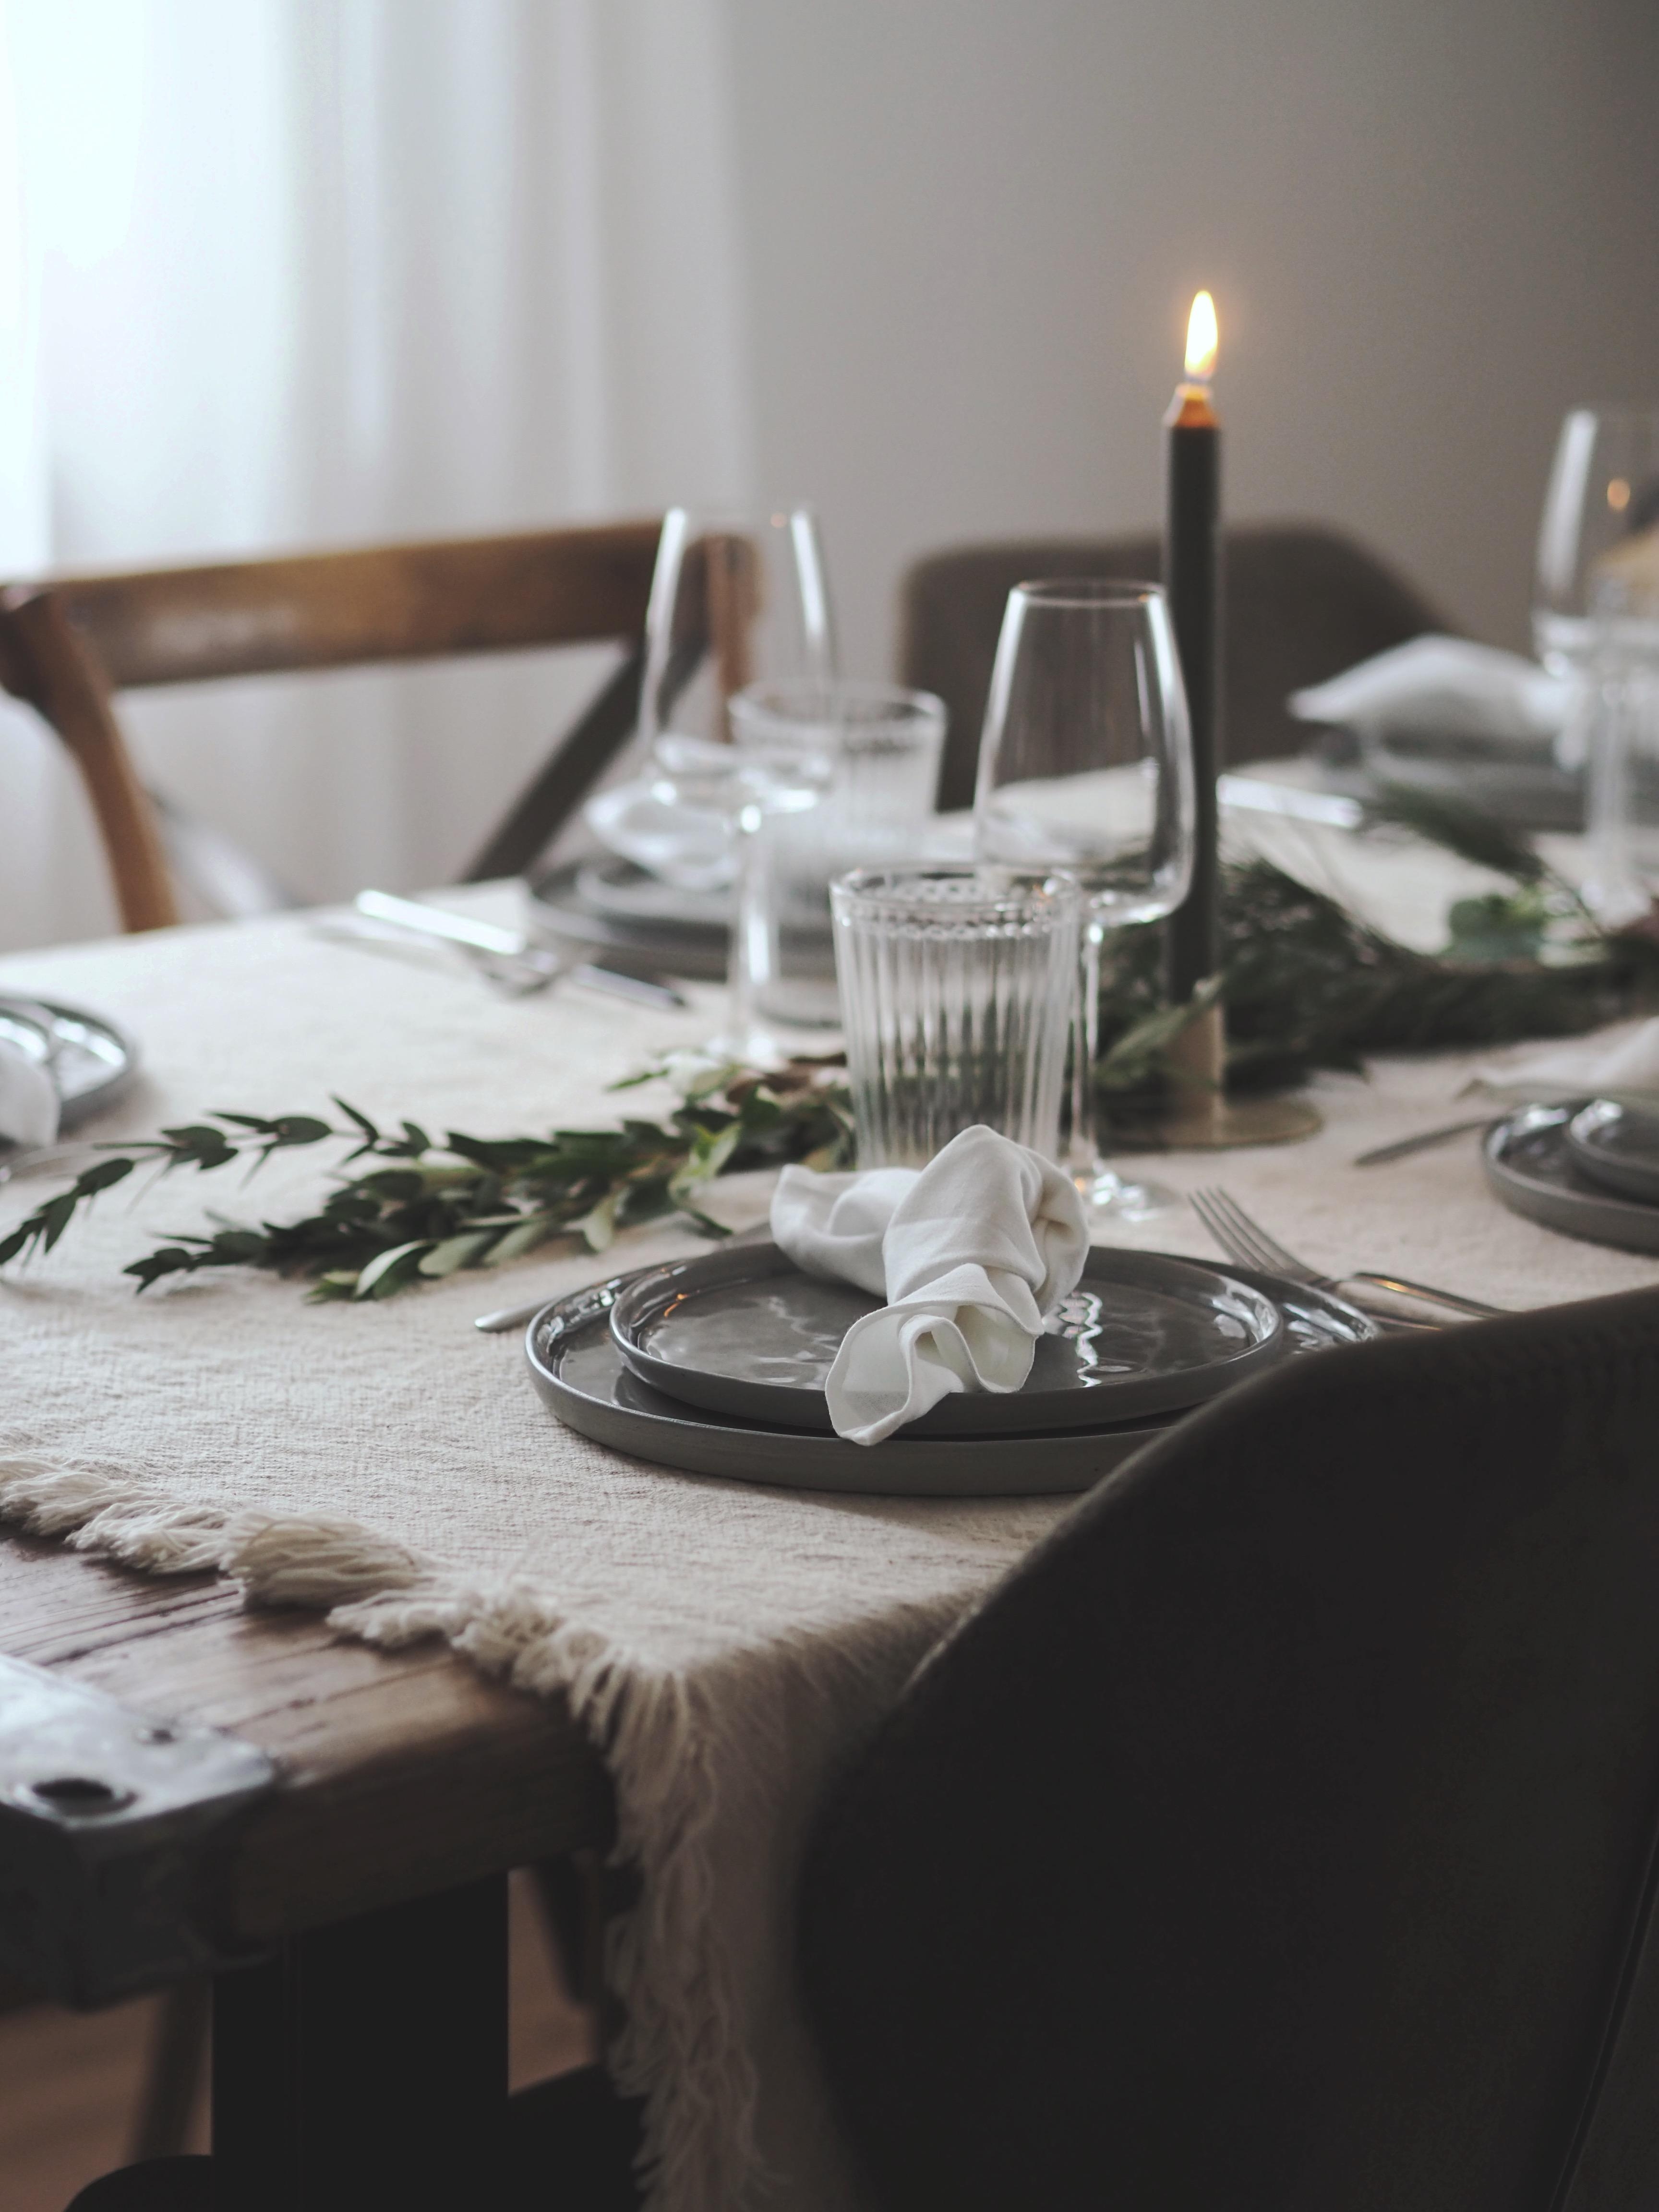 Gedeckter Tisch



#christmastable #tablesetting #weihnachtstisch #gedecktertisch